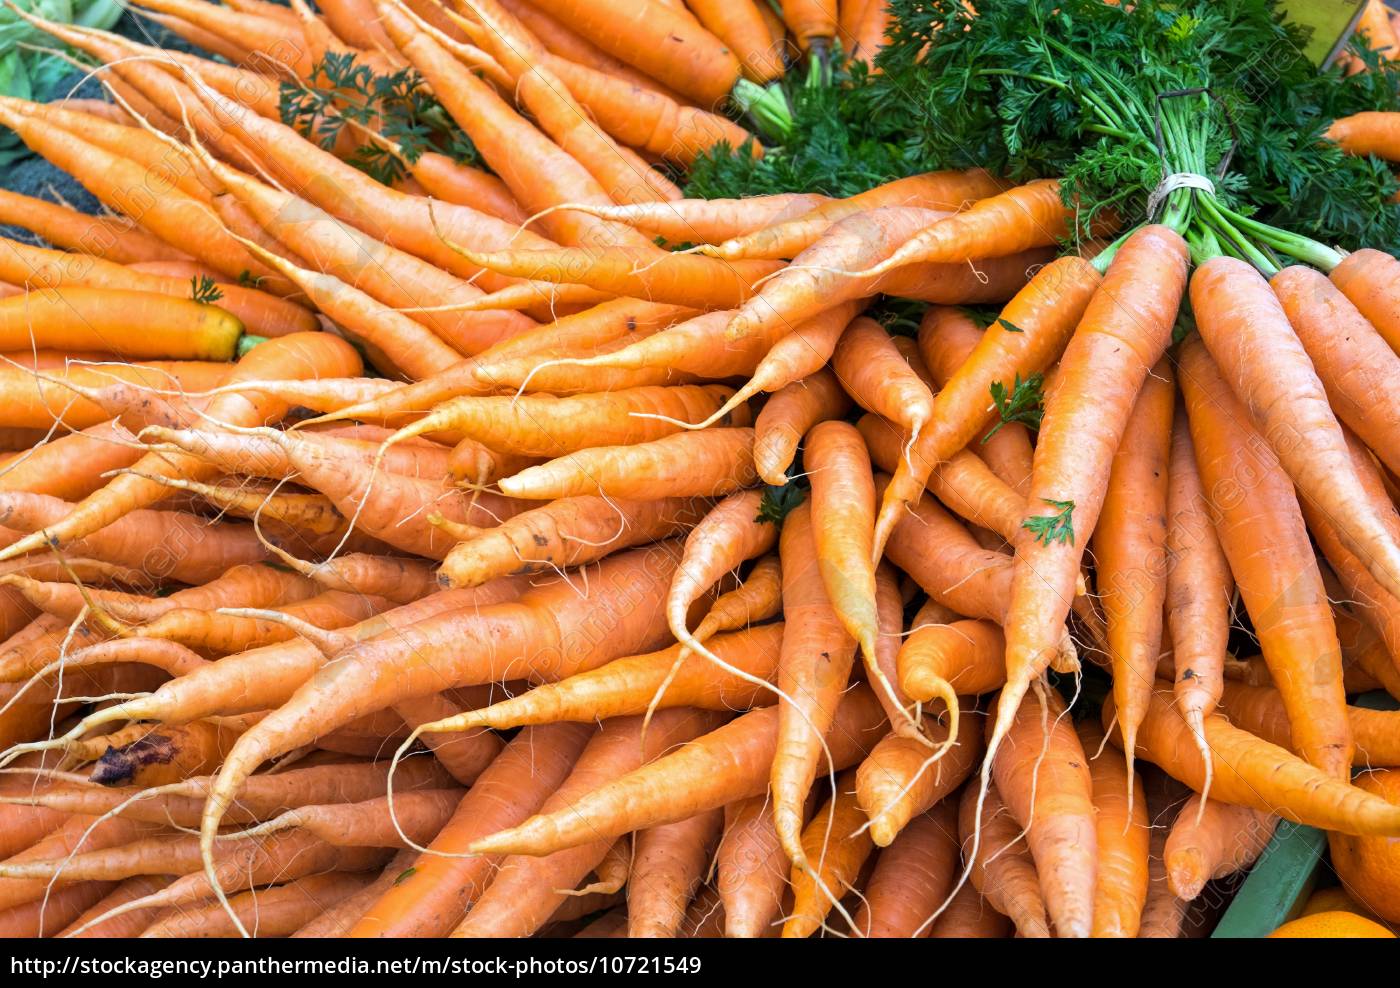 Ein Bund Karotten - Lizenzfreies Bild - #10721549 | Bildagentur ...